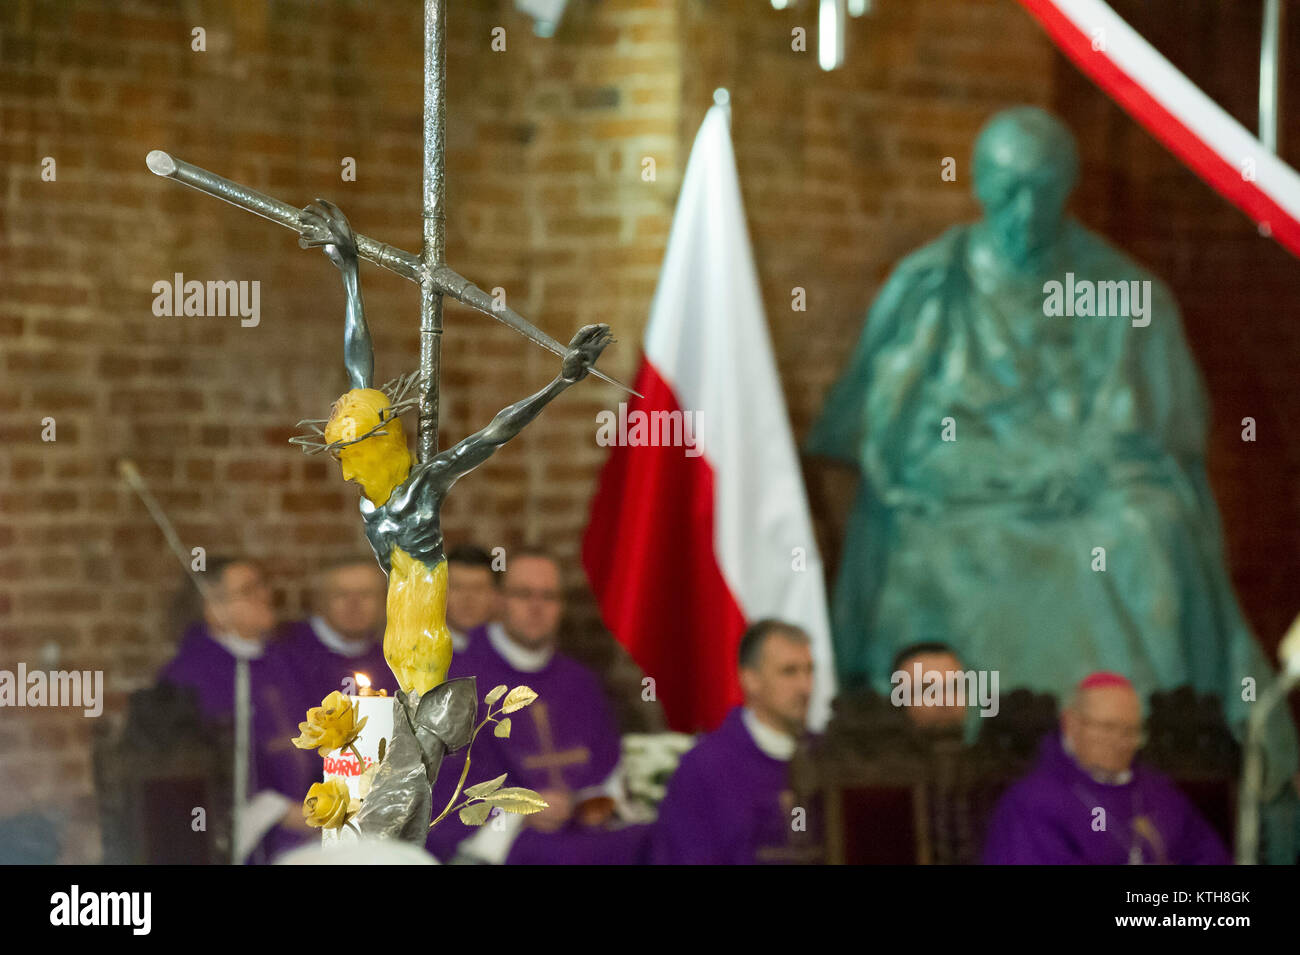 Statua del Cardinale Stefan Wyszynski, Primate di Polonia, nella chiesa di Santa Brigida a Danzica, Polonia. 16 dic. 2017 © Wojciech Strozyk / Stock Alamy Ph Foto Stock